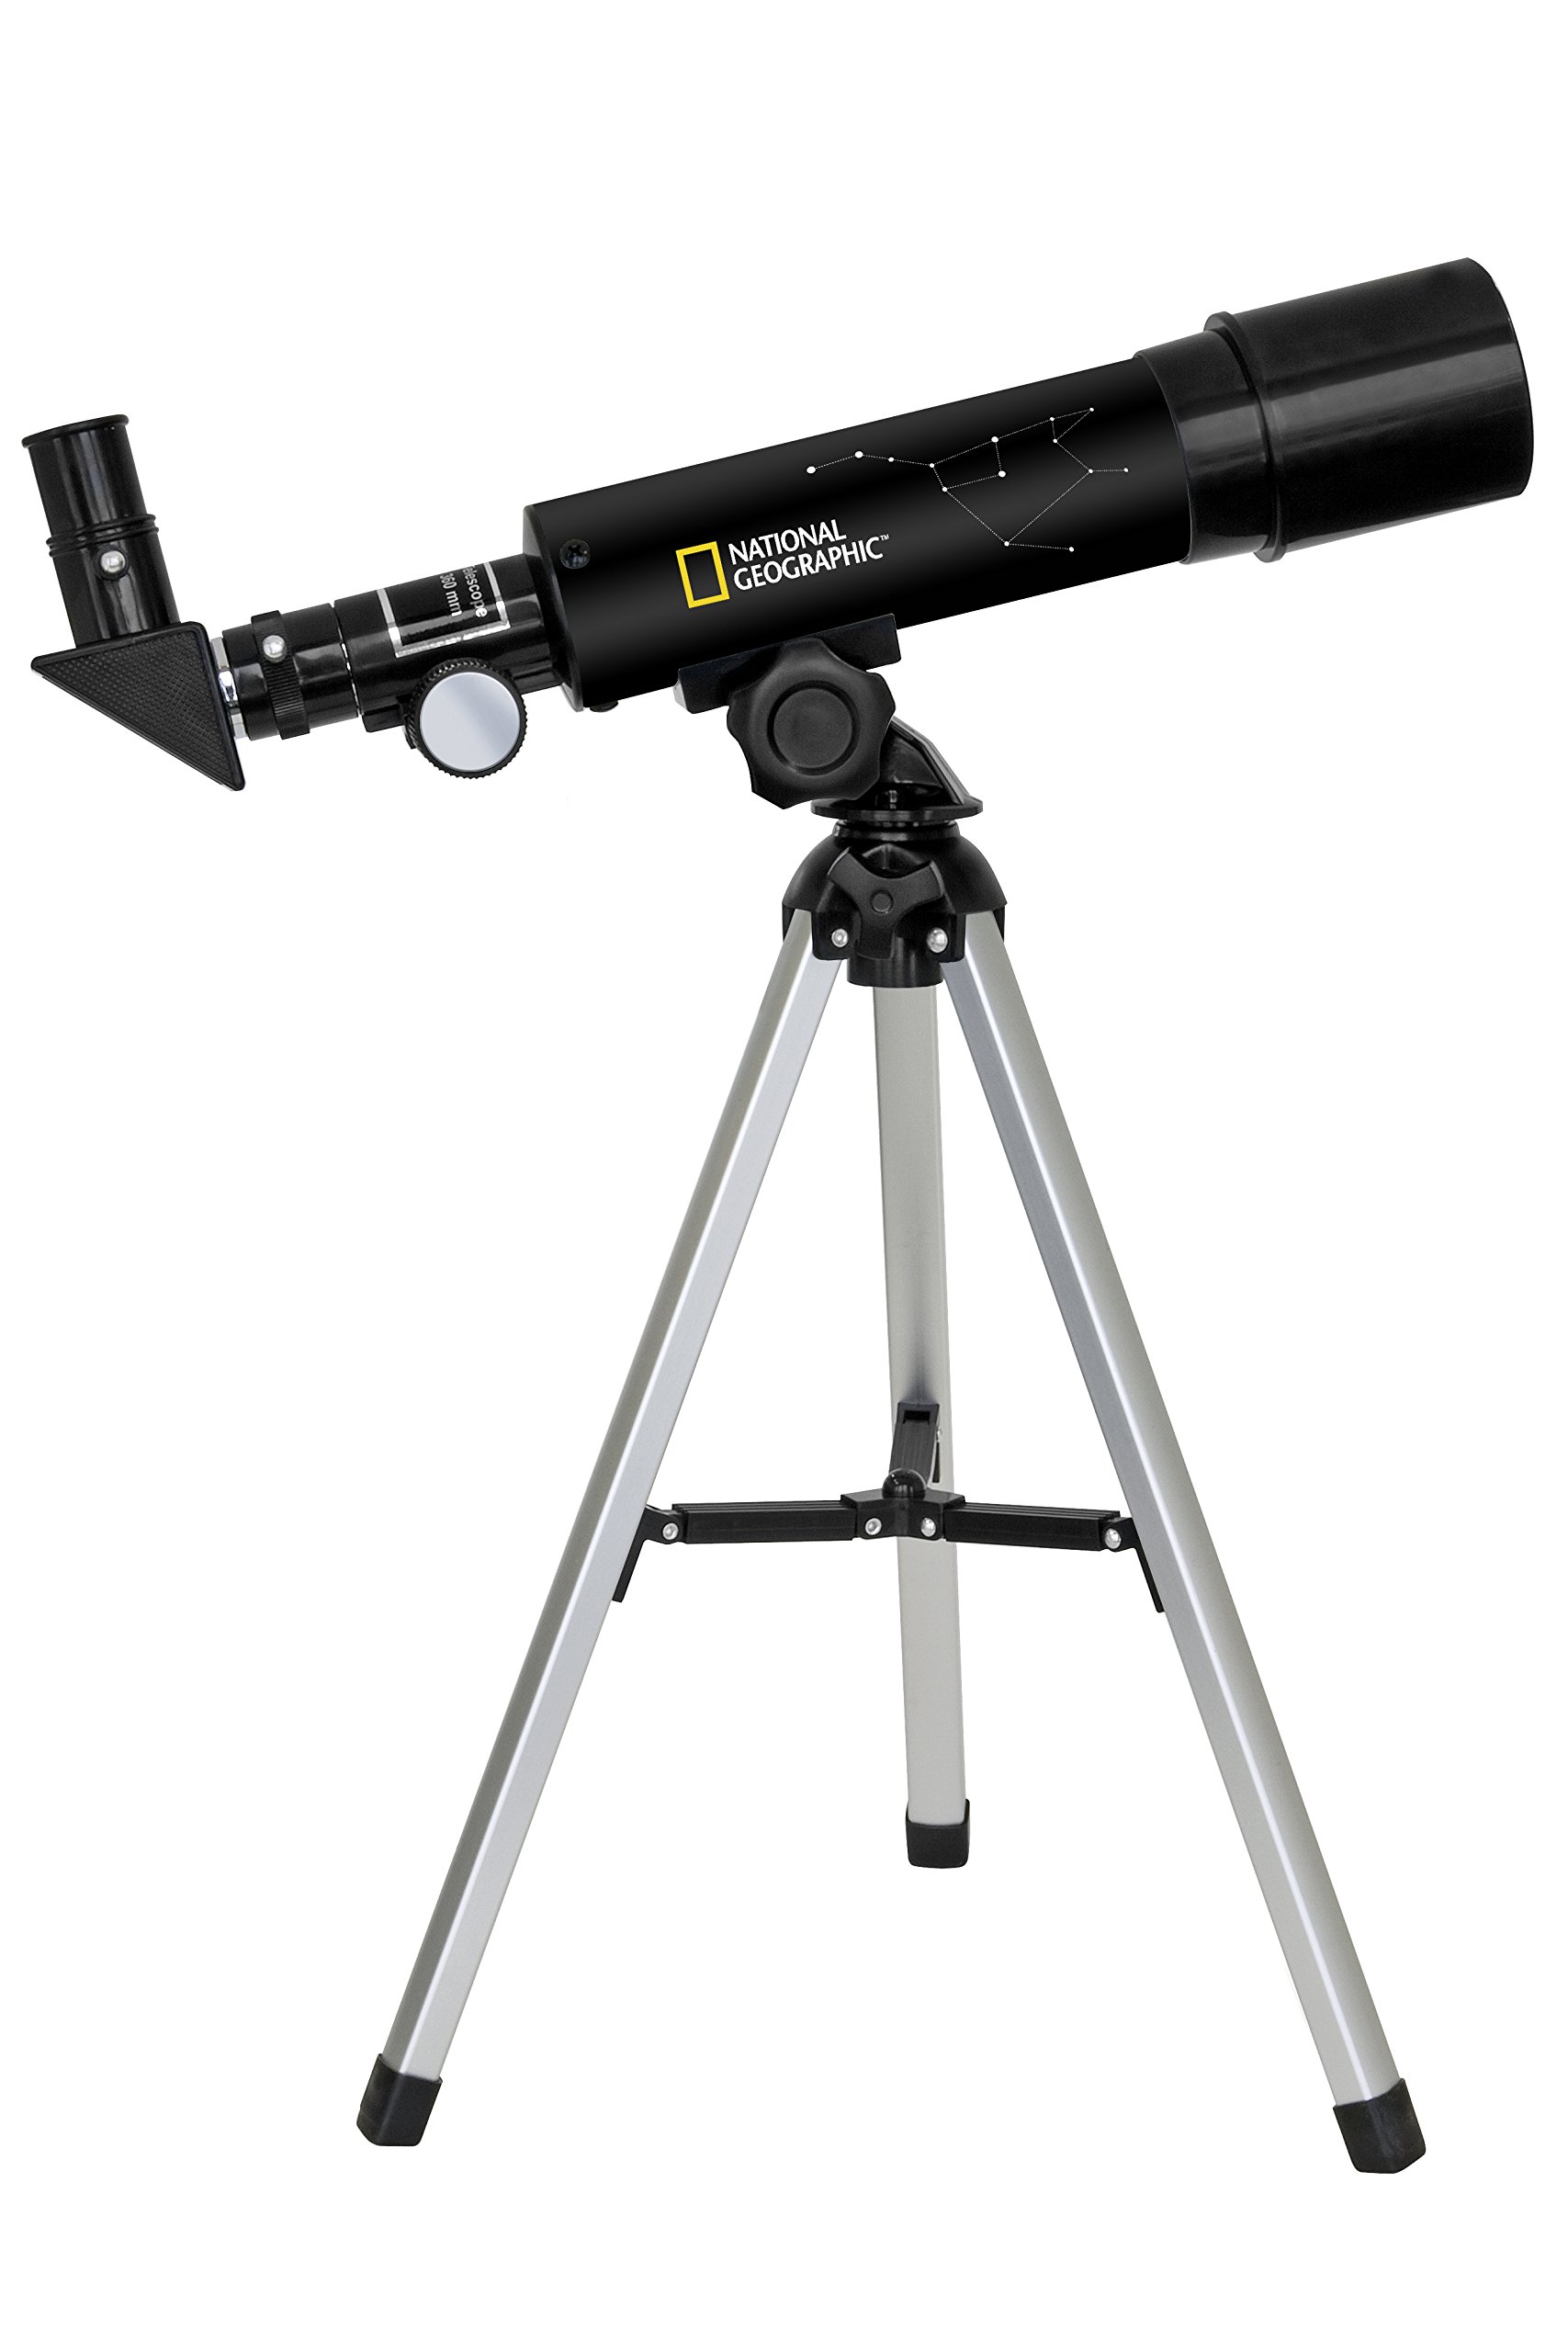 National Geographic 50/360 Teleskop mit Tischstativ aus Aluminium, 60-facher Vergrößerung und Zenitspiegel für Land- und Planetenbeobachtungen, schwarz